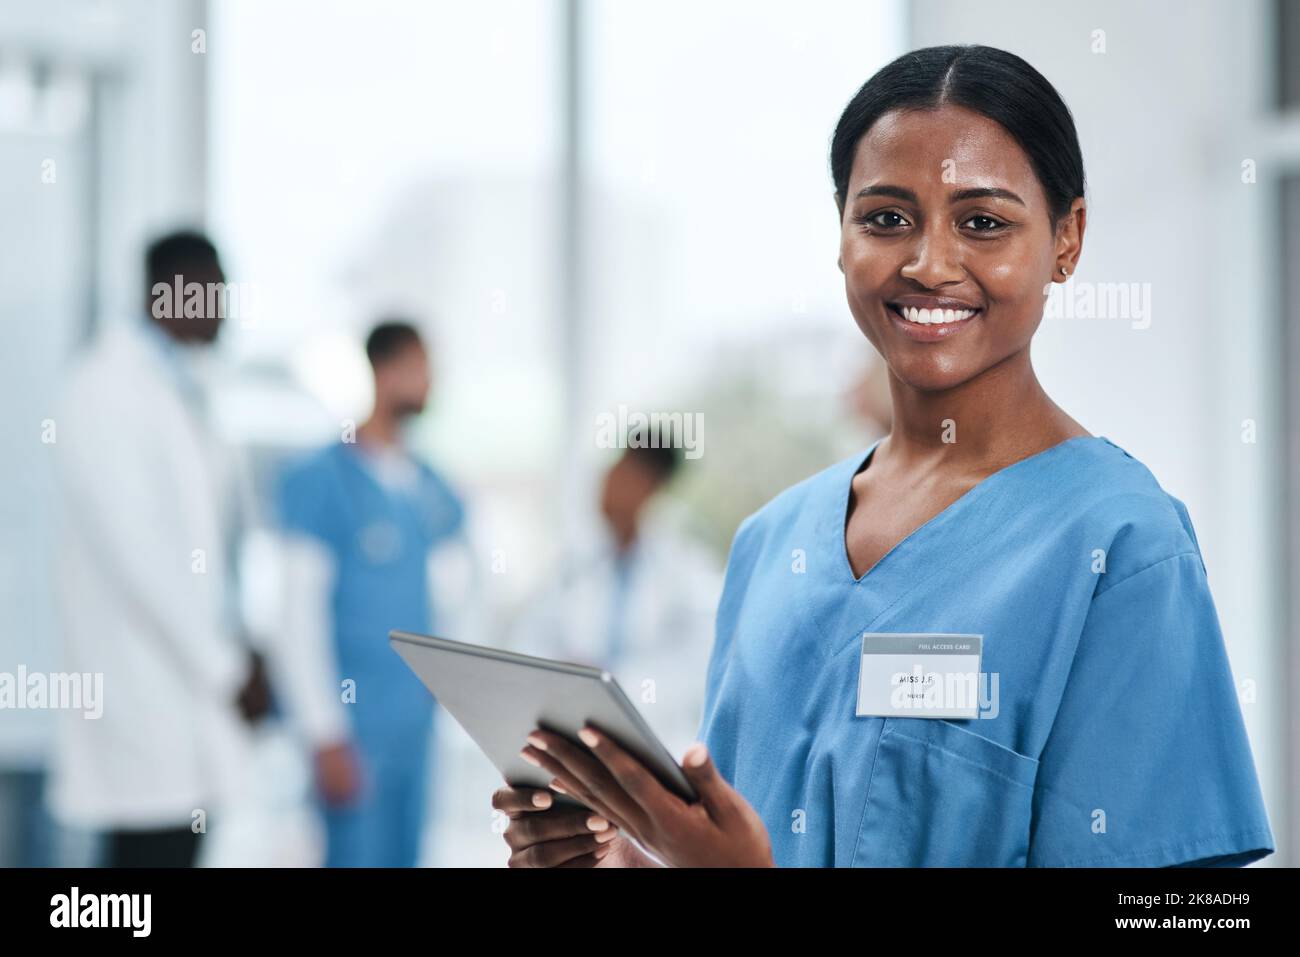 Les dernières innovations en matière de recherche médicale sont en un coup de pouce. Portrait d'une jeune infirmière utilisant une tablette numérique dans un hôpital. Banque D'Images